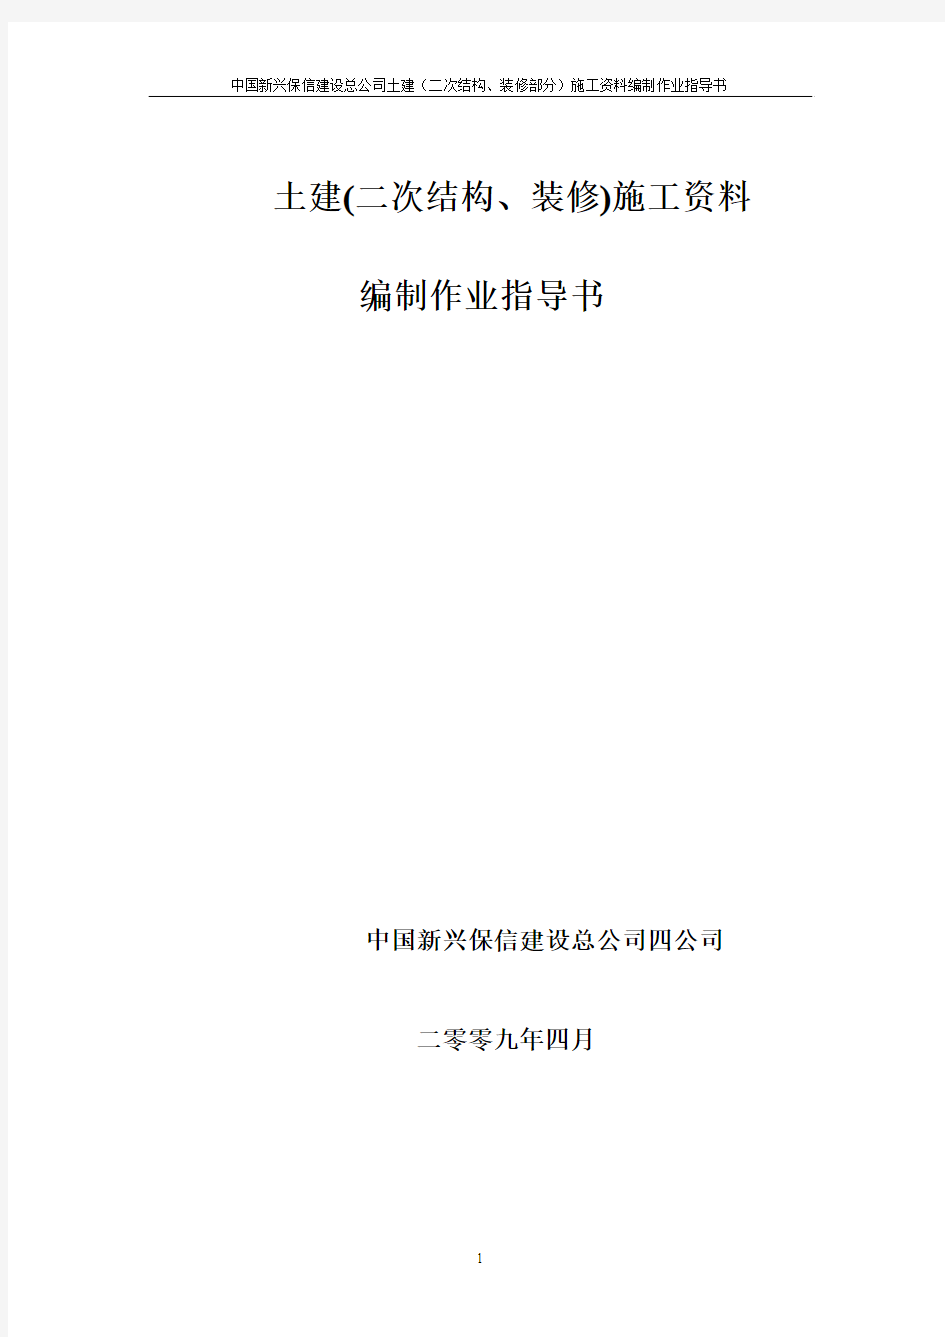 中国新兴保信建设总公司土建(二次结构、装修部分)施工资料编制作业指导书(09.4.3)